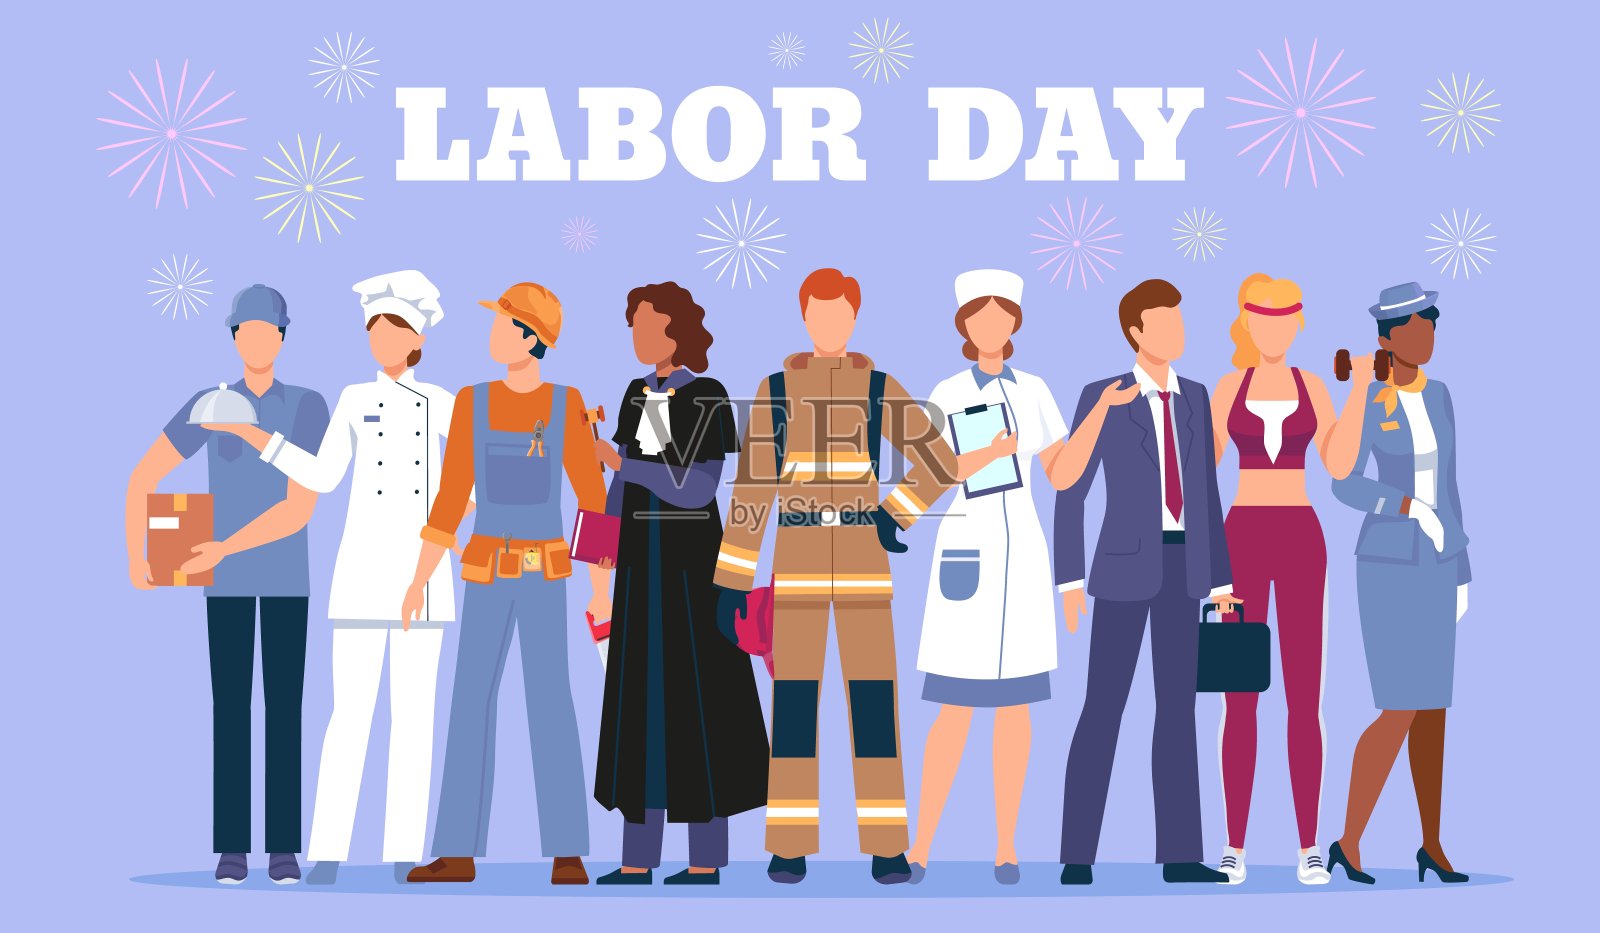 劳动节快乐海报贴着穿着职业制服的工人们。国际工作工作假期。多种字符员工矢量横幅设计模板素材